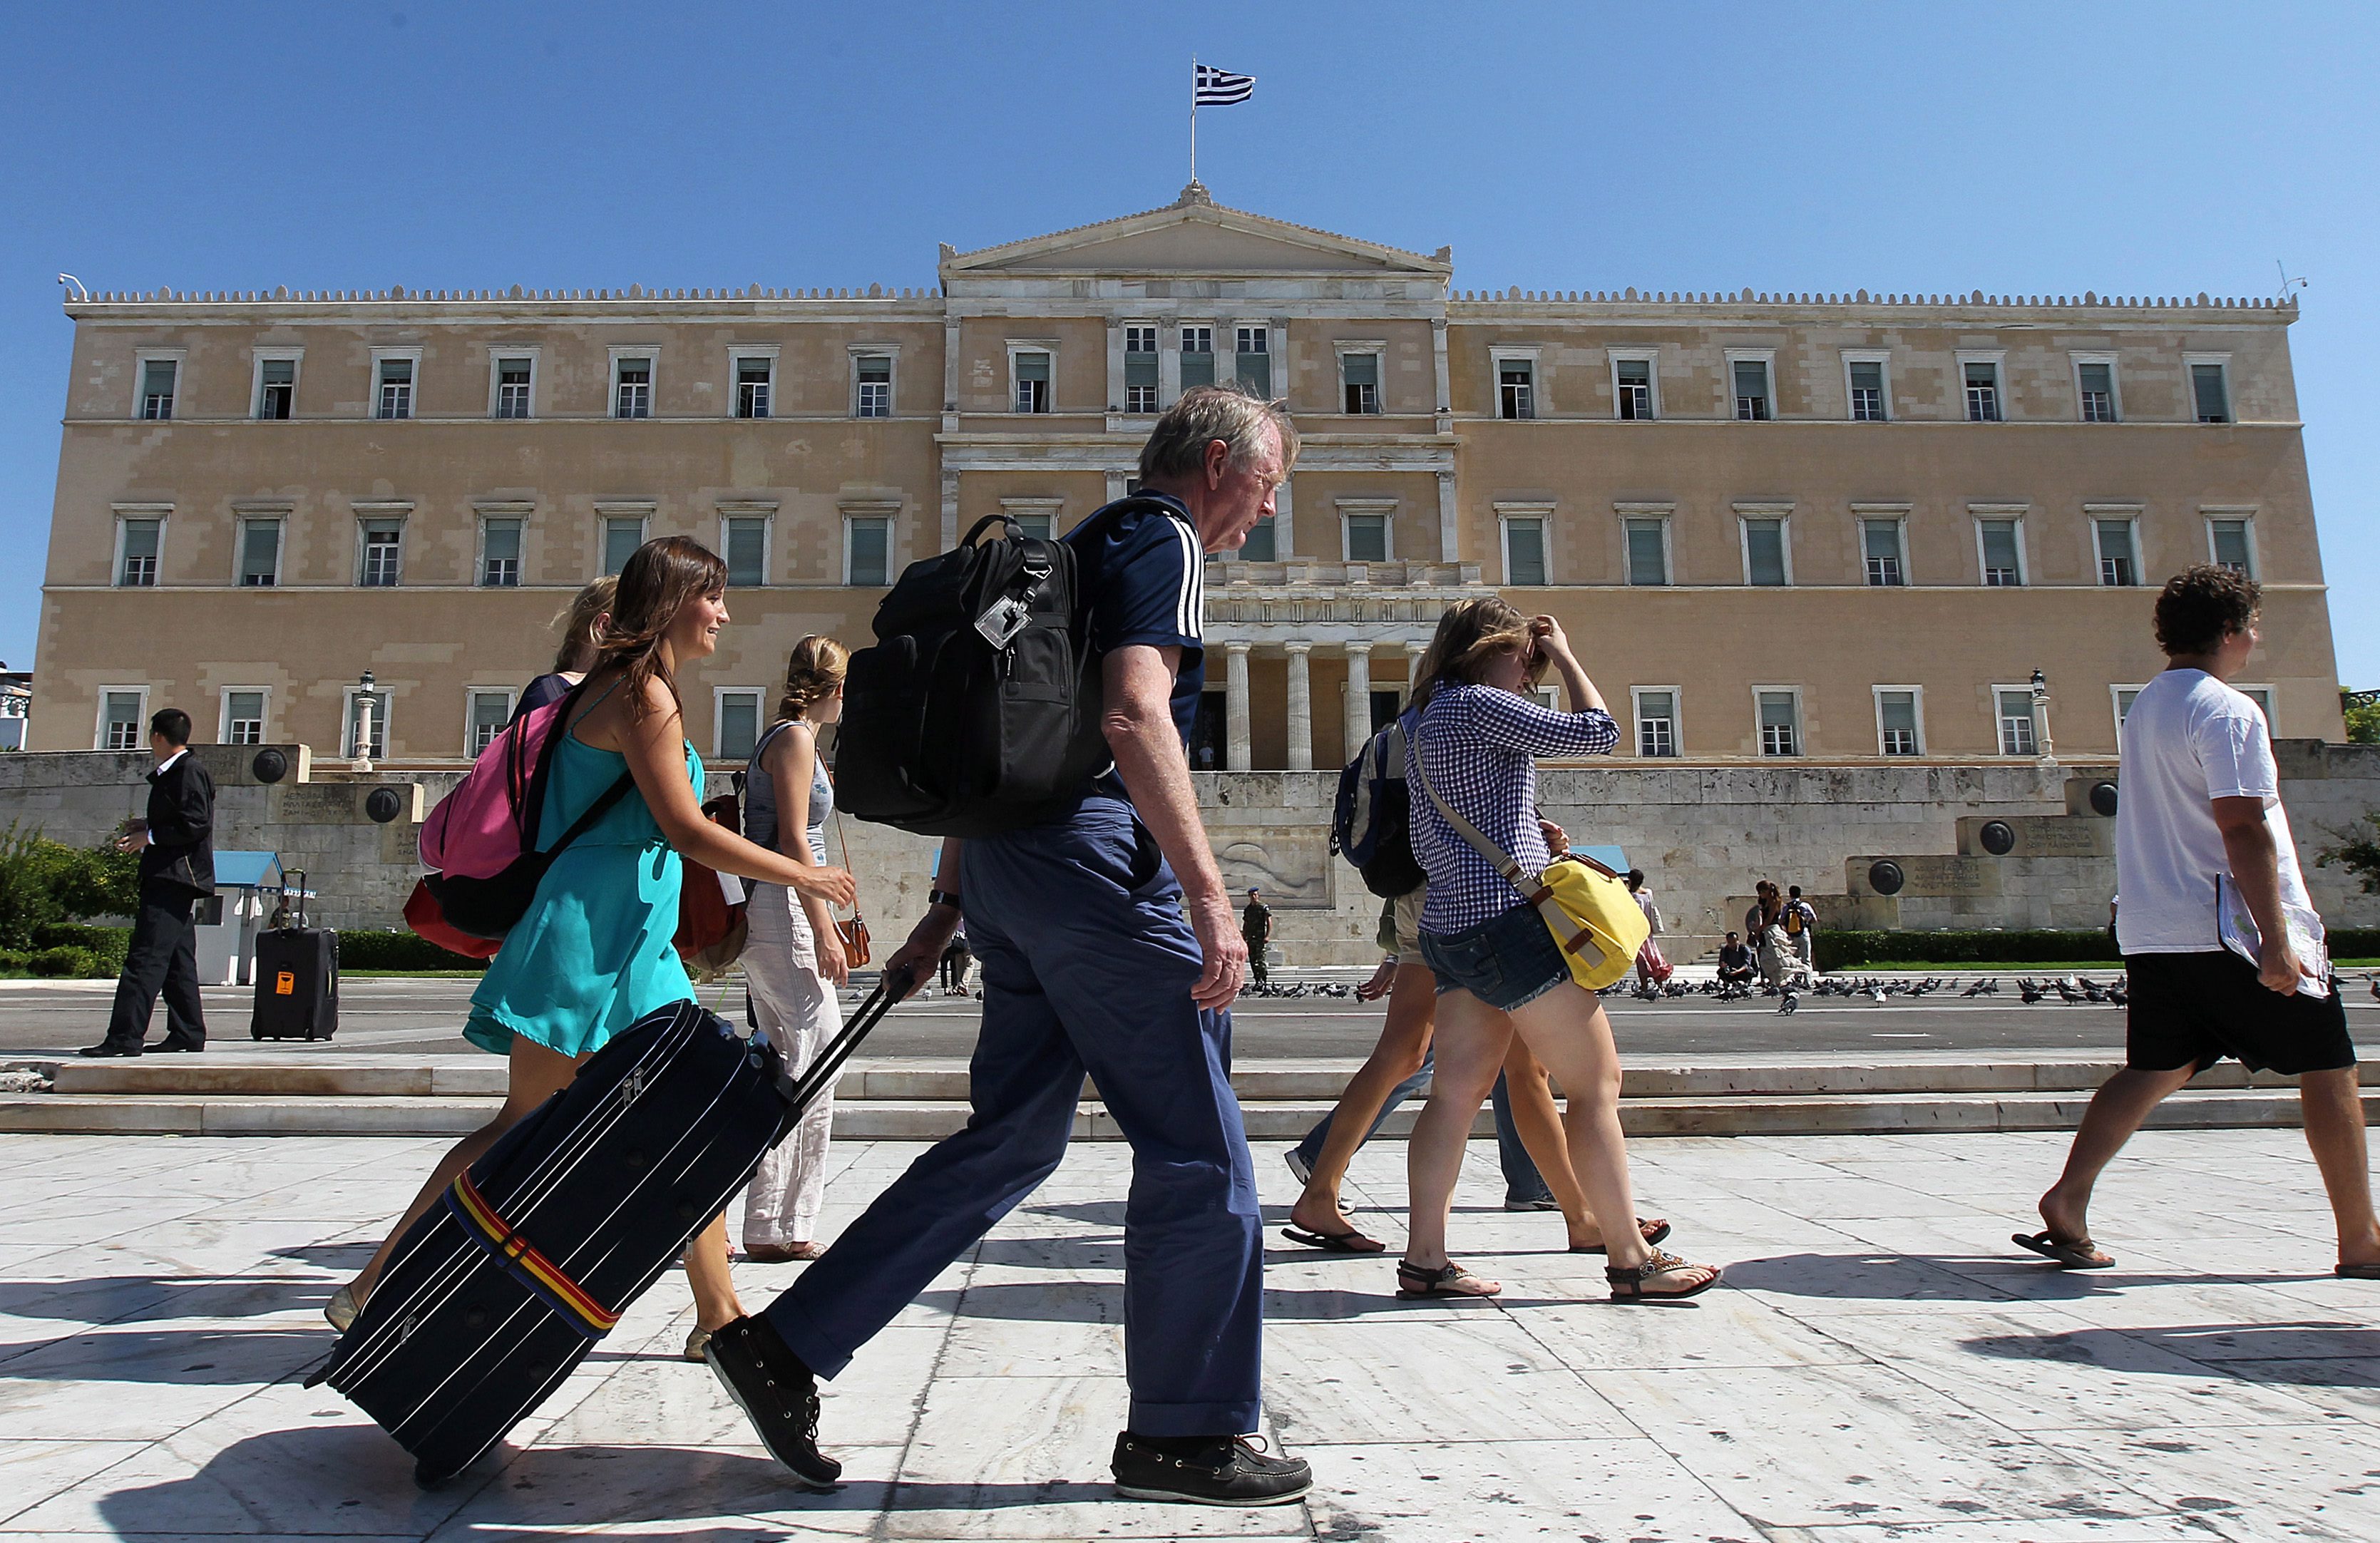 Χωρίς μέσα μαζικής μεταφοράς και ταξί την Τετάρτη η Αθήνα